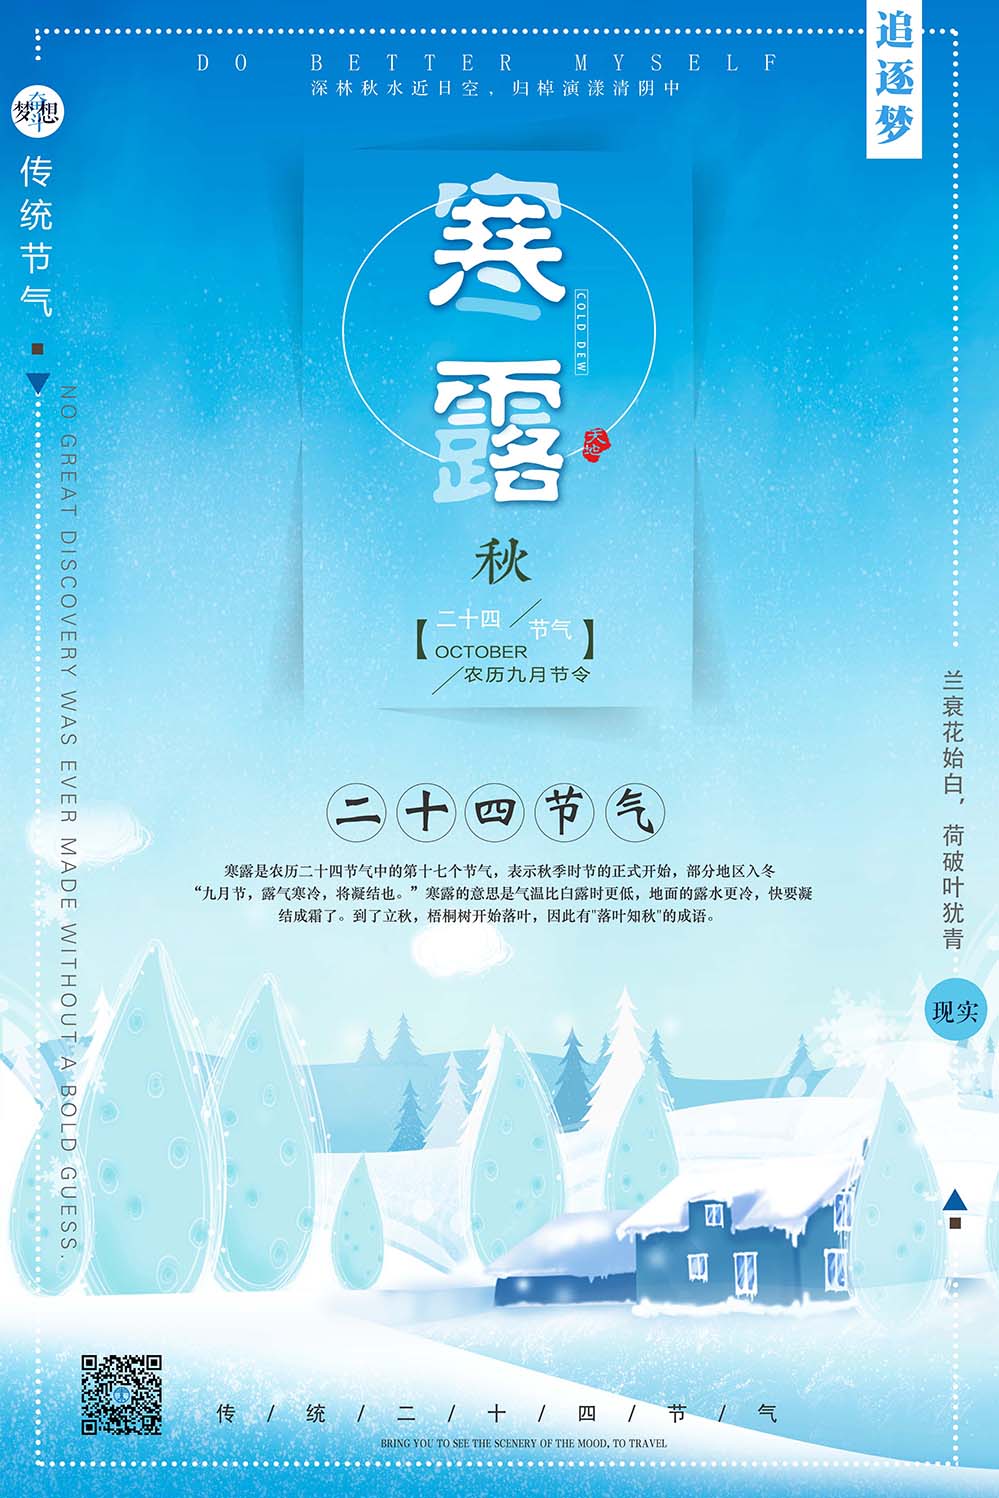 二十四节气之寒露中国风海报设计PSD源文件